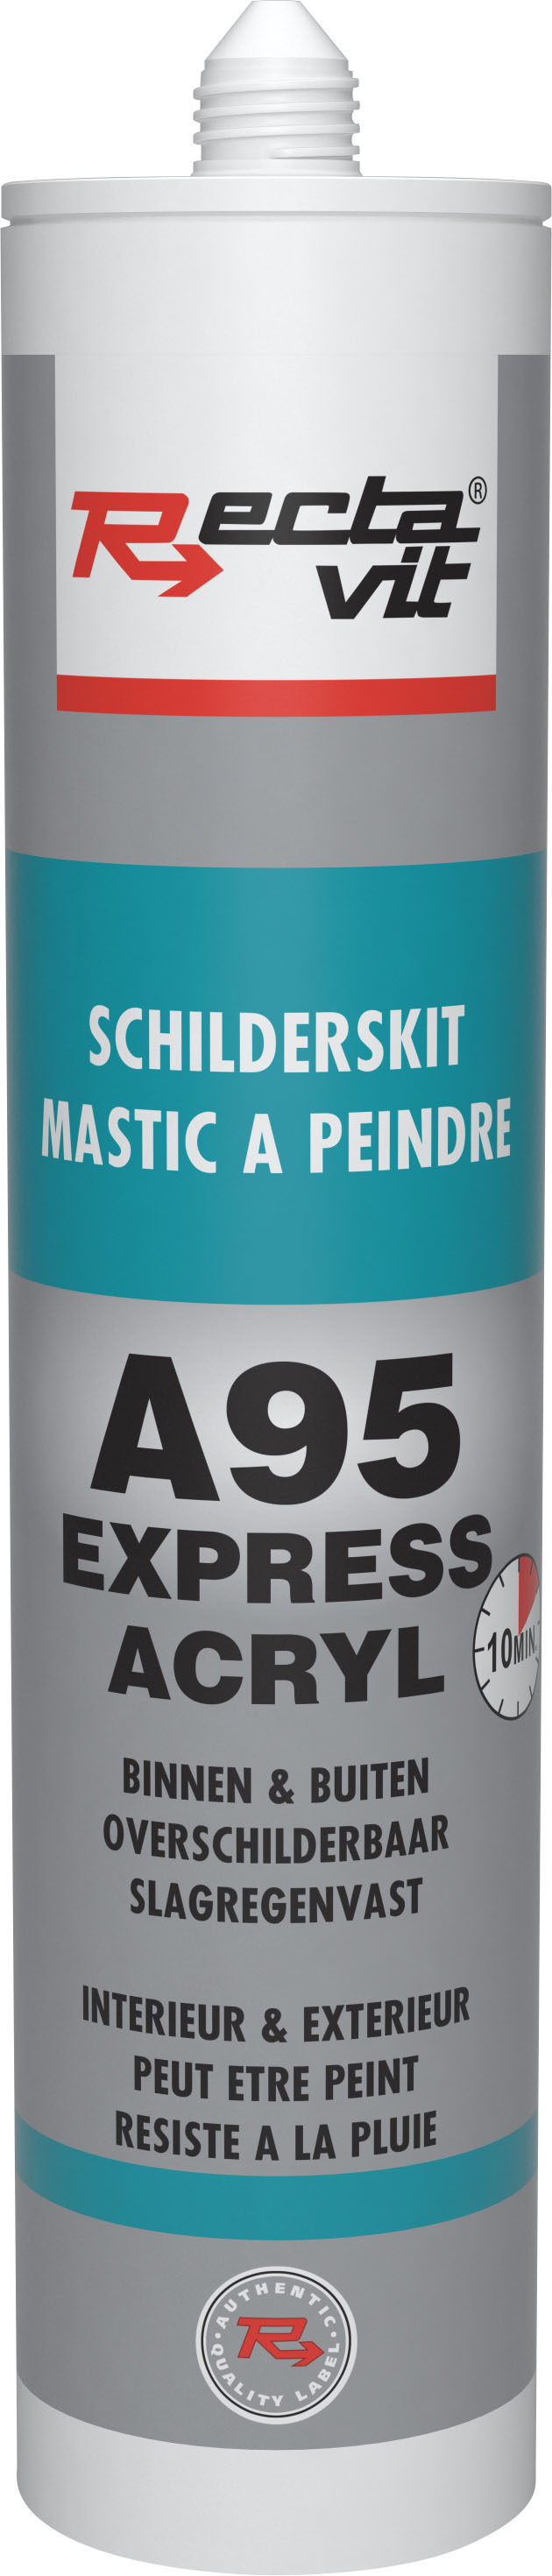 a95 acryl